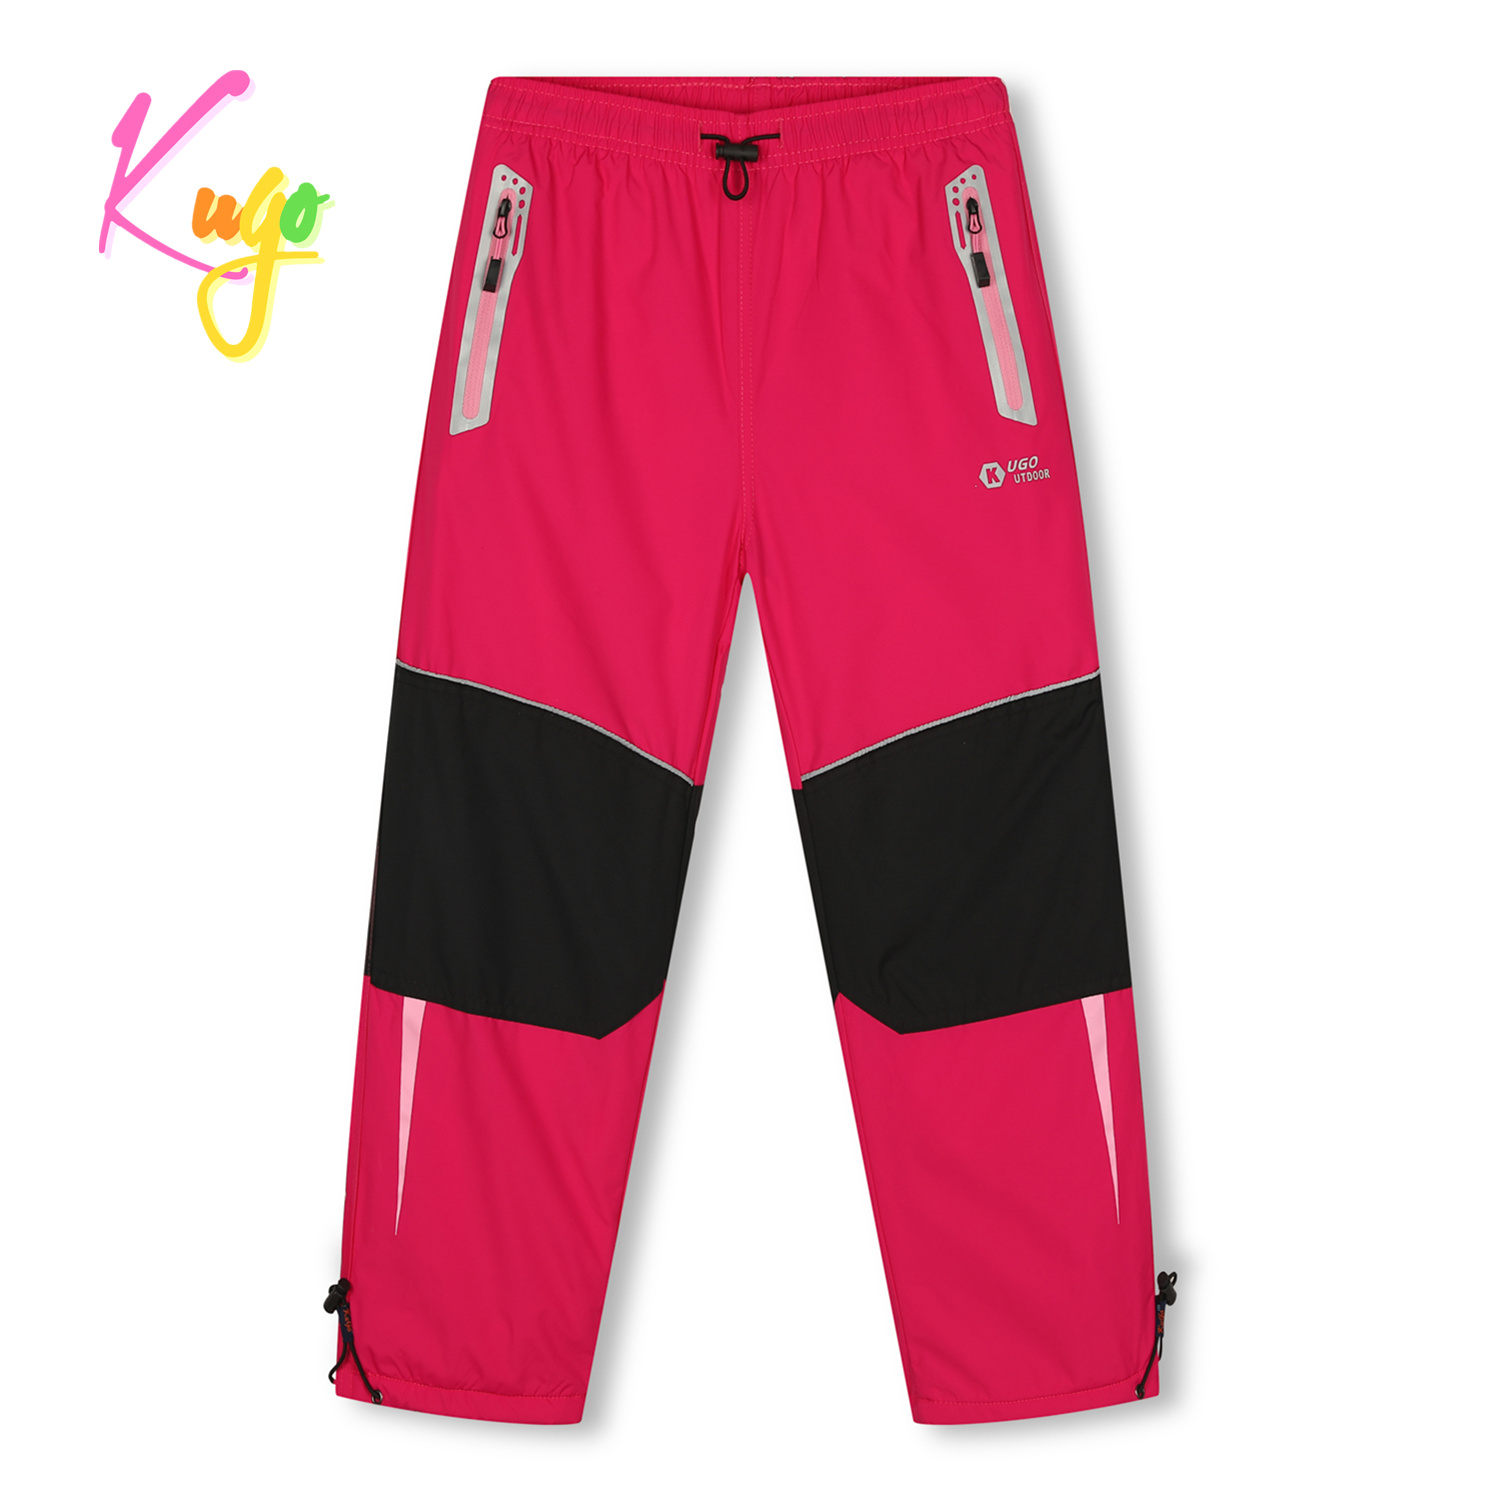 Dívčí šusťákové kalhoty, zateplené - KUGO DK7132, růžová Barva: Růžová, Velikost: 122